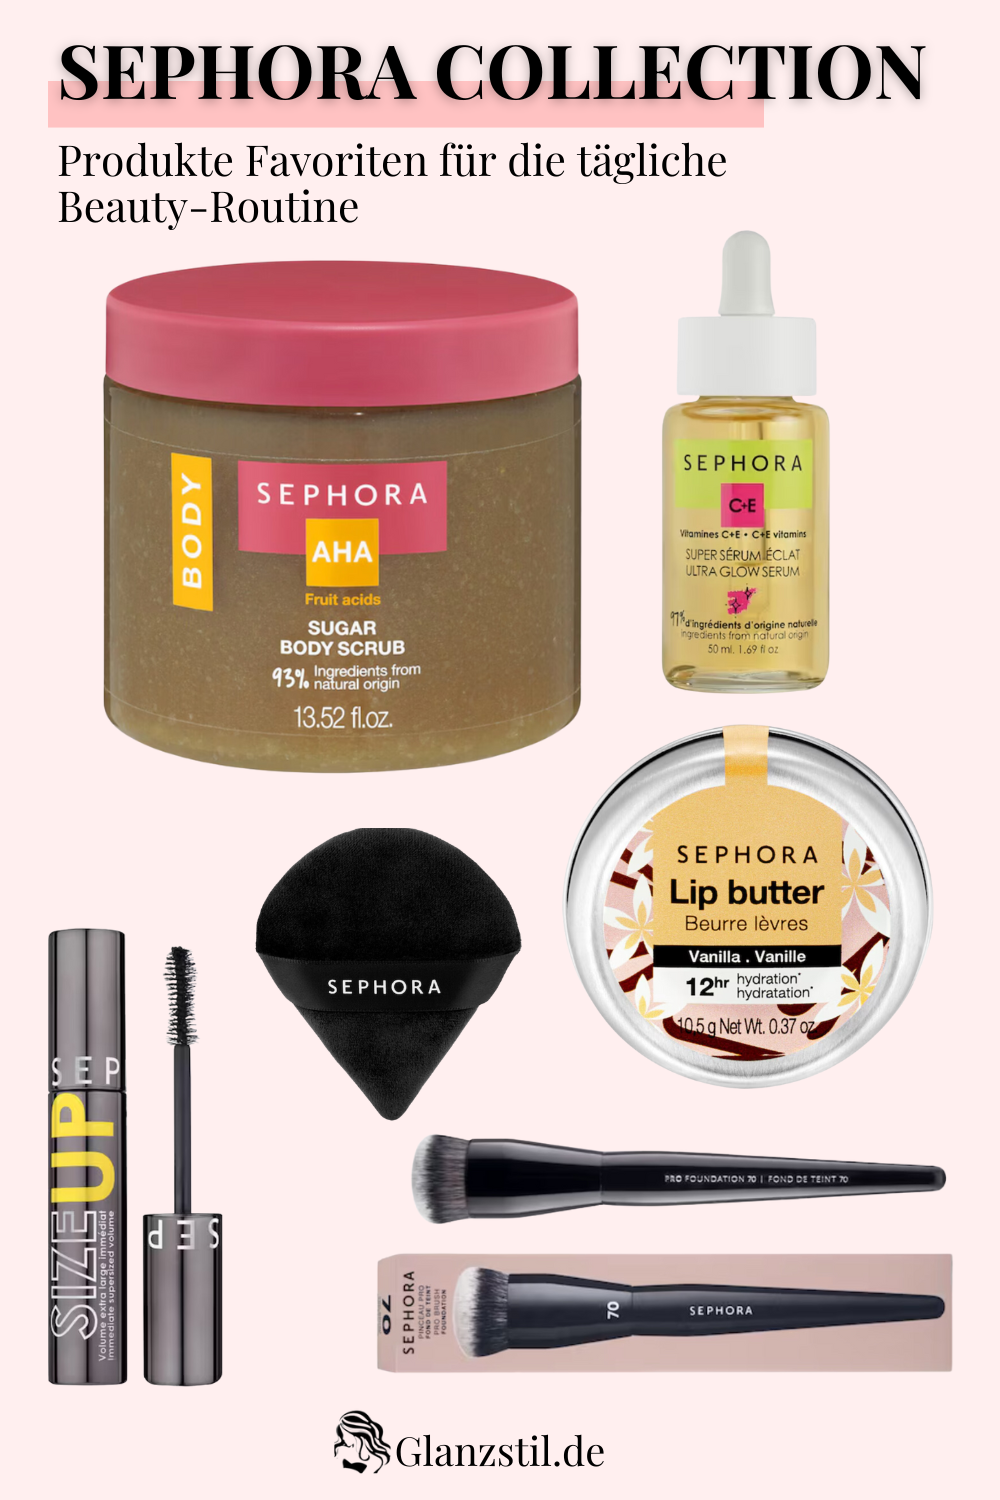 Sephora Collection - Produkte Favoriten für die tägliche Beauty-Routine